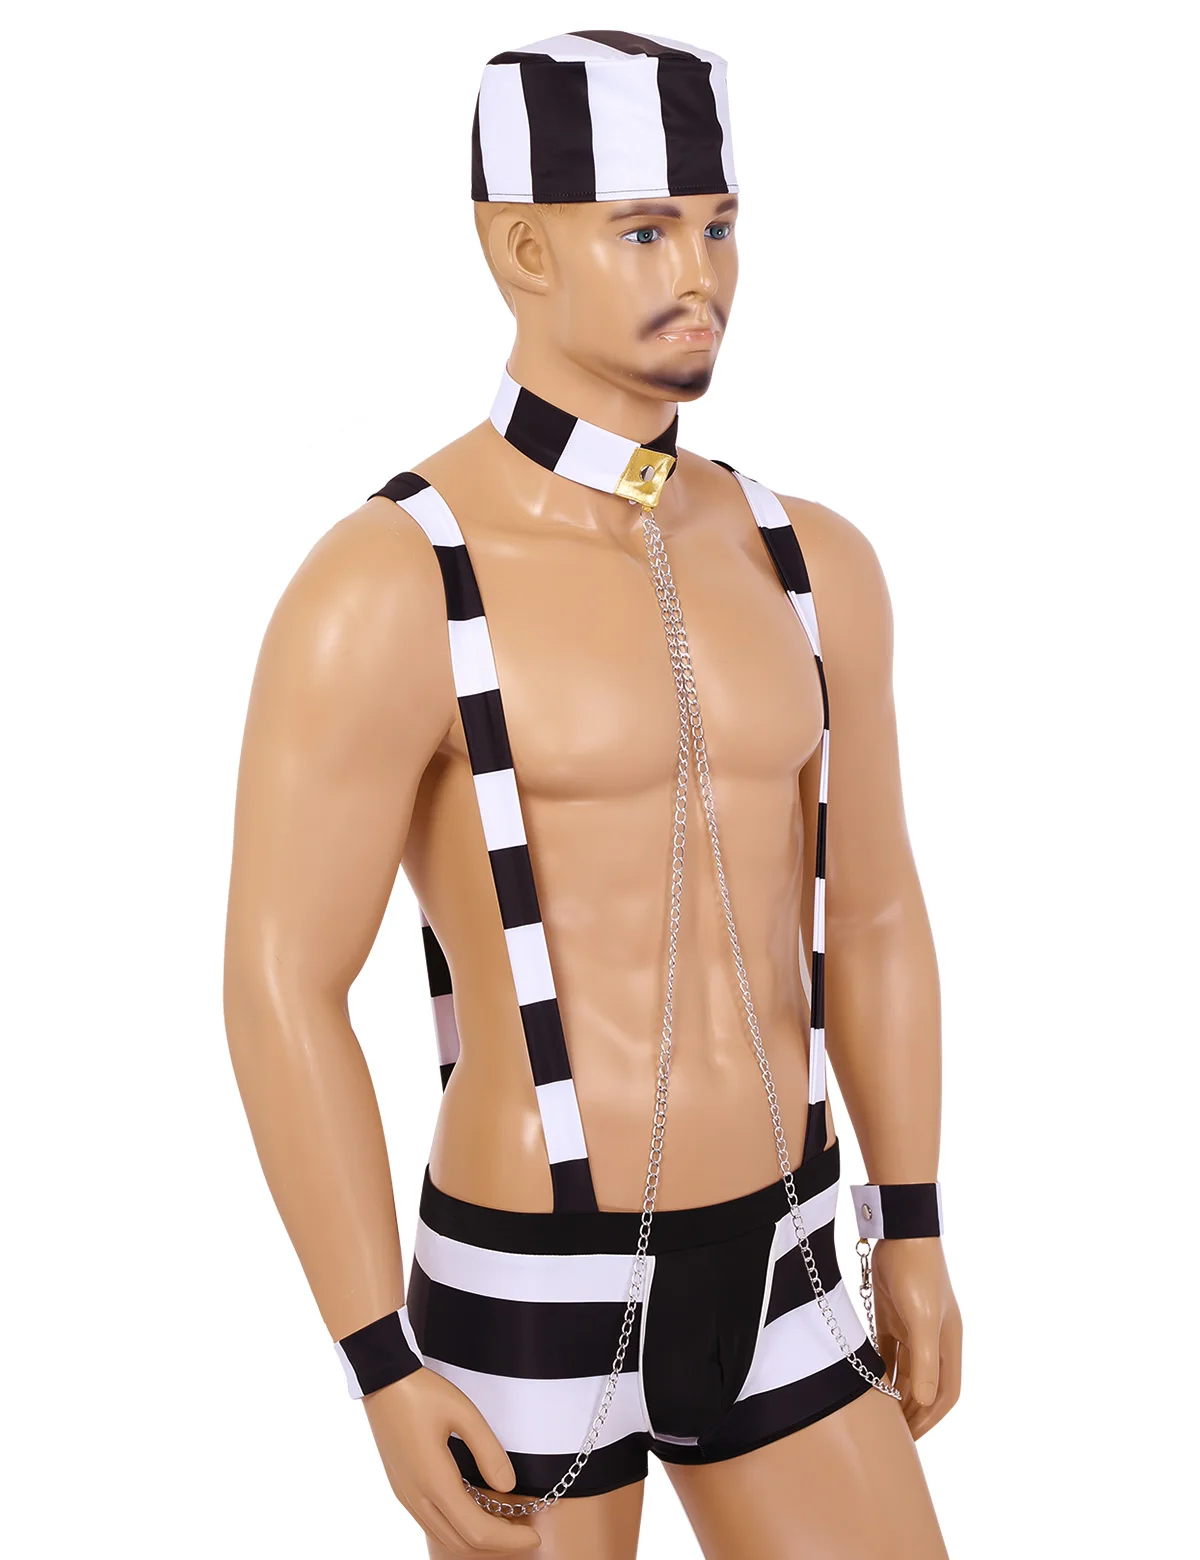 Сексуальный мужской костюм для взрослых; костюм для ролевых игр; костюм для Хэллоуина; комплект нижнего белья; шорты-боксеры на подтяжках с воротником-шляпой и браслетом